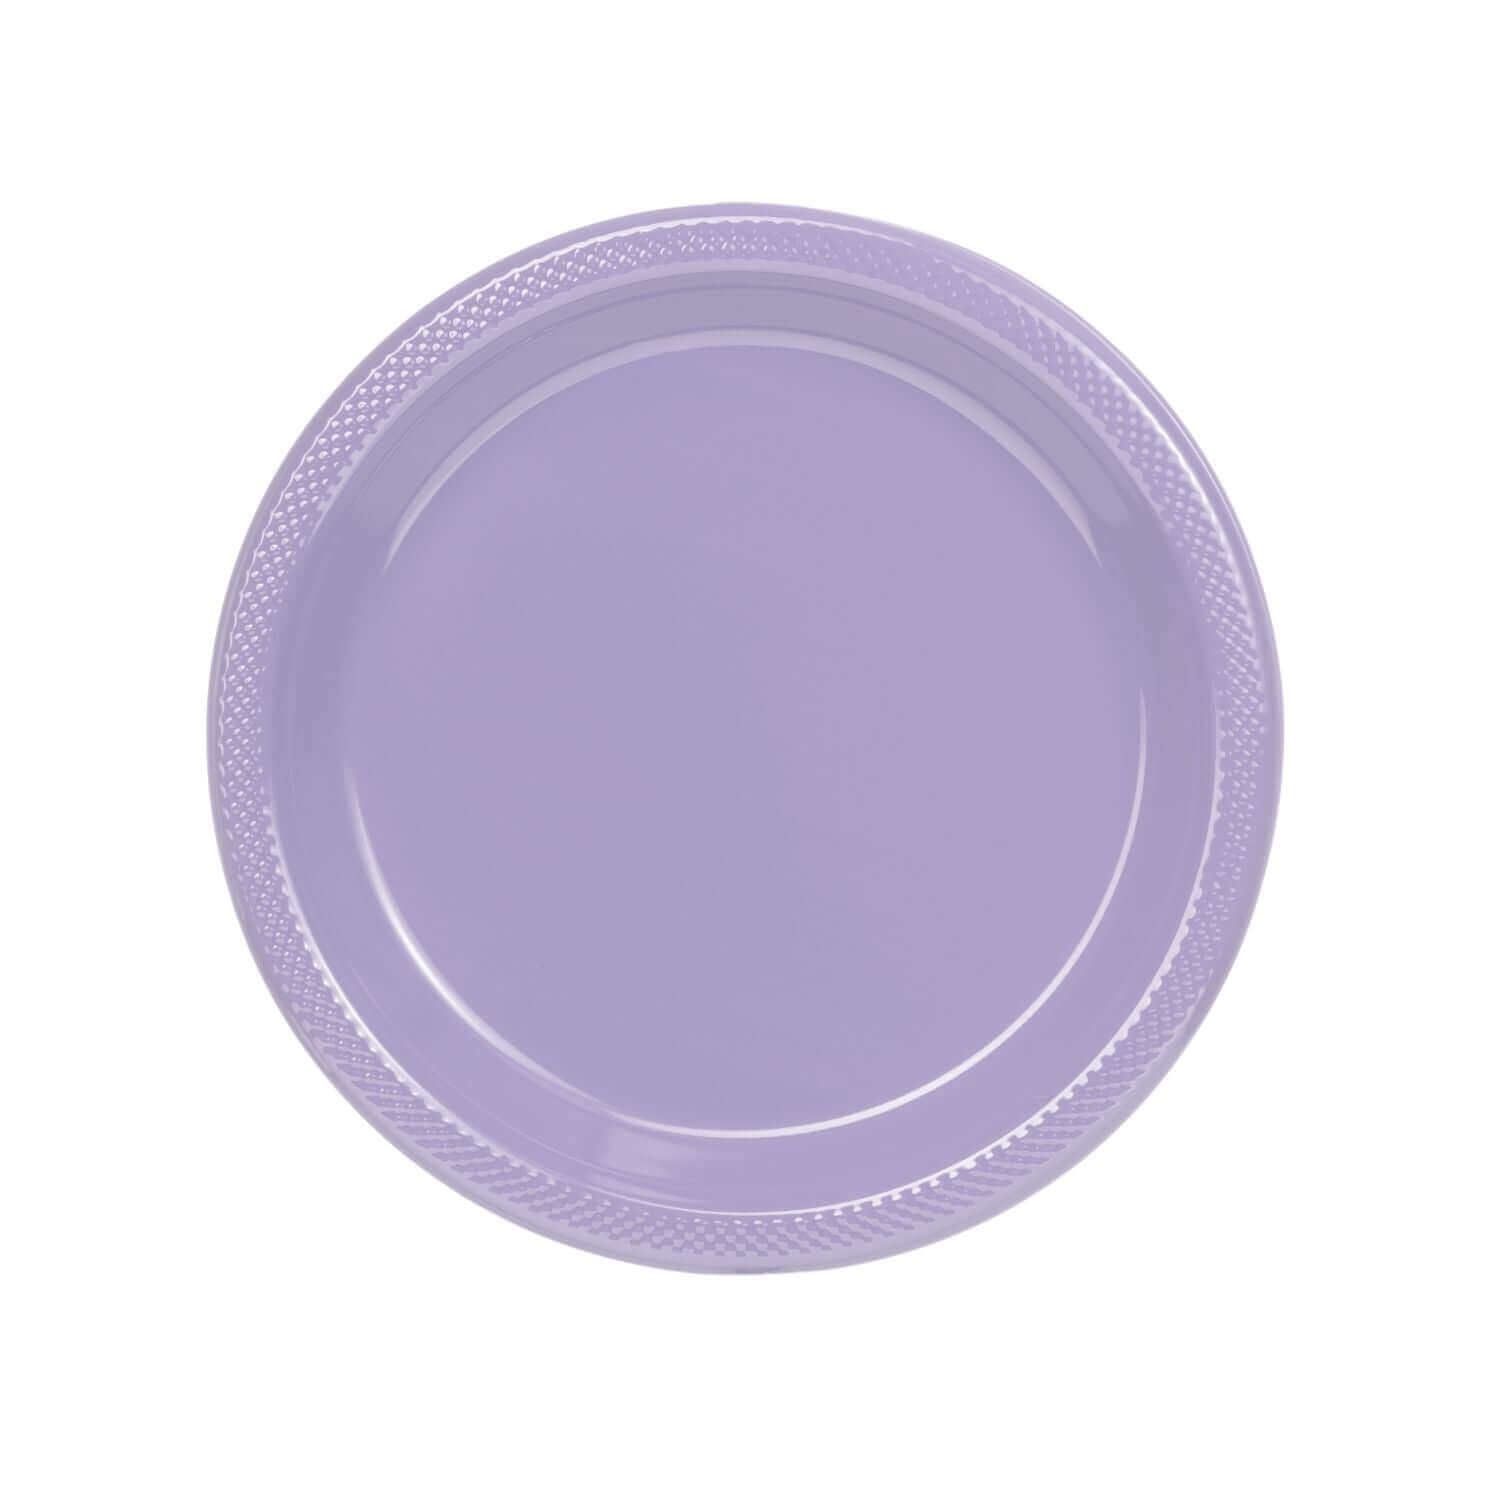 7" | Lavender Plastic Plates | 600 Count - Yom Tov Settings